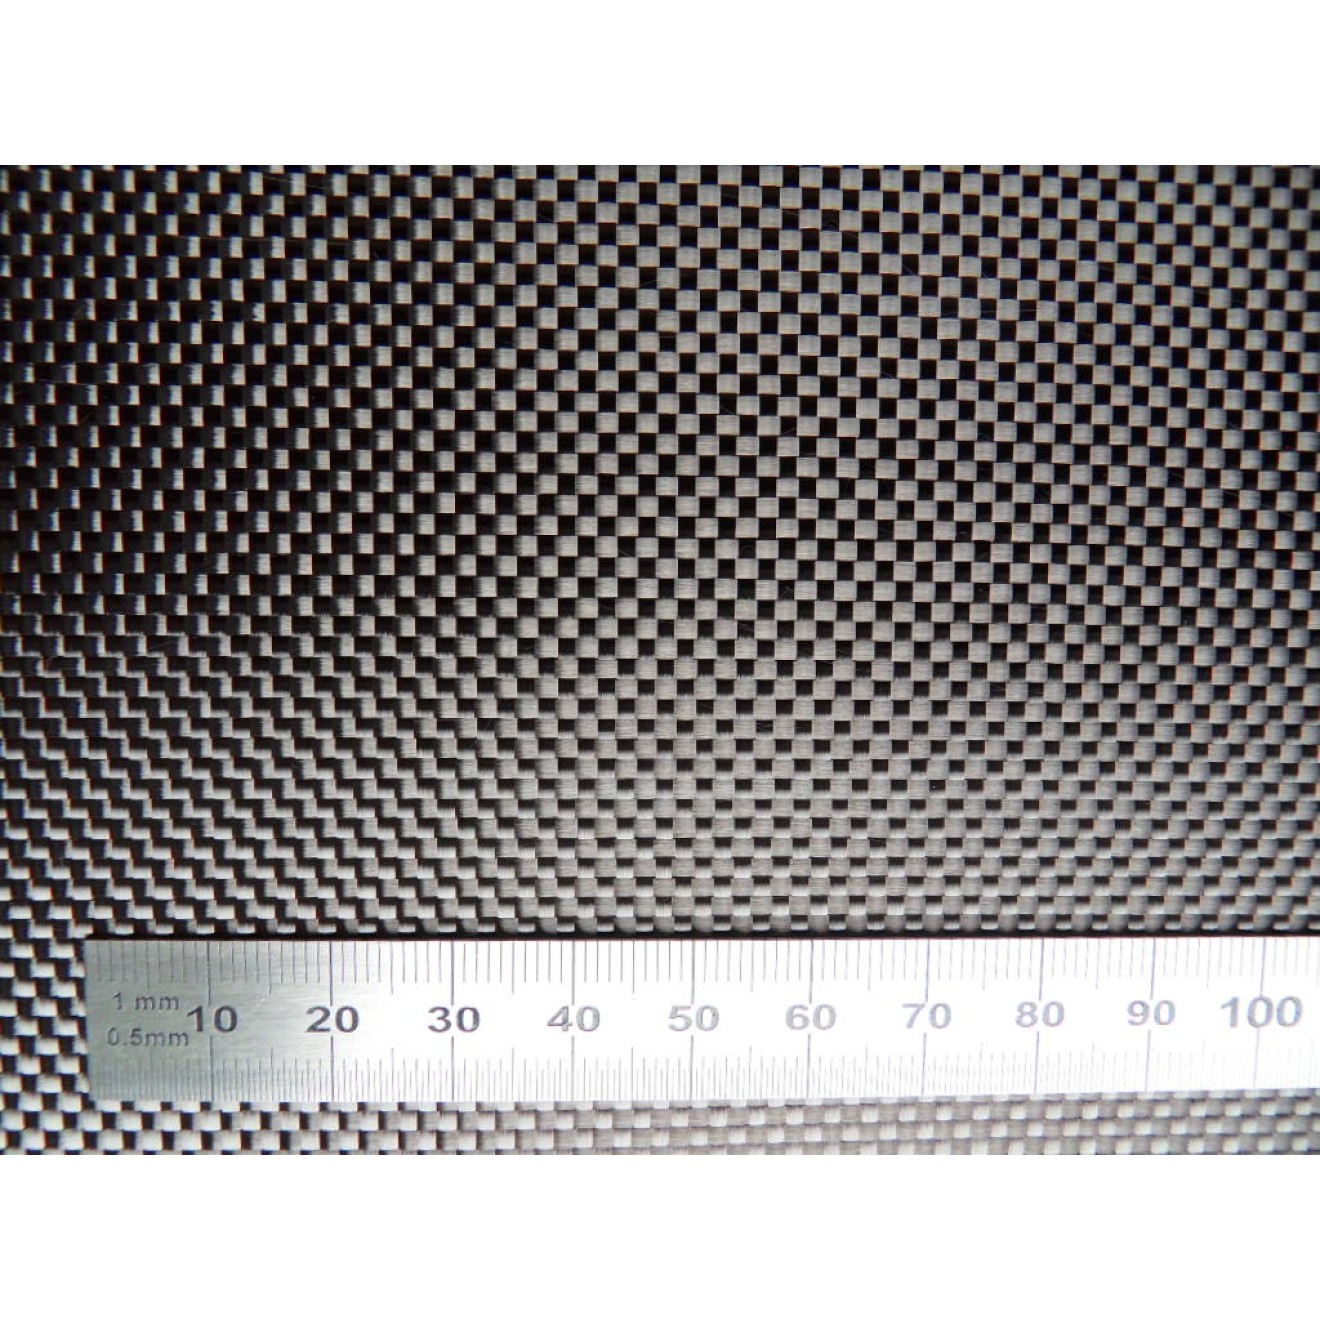 Woven carbon fiber fabric 3K 245g/m² plain weave, width 120cm, roll length 50m